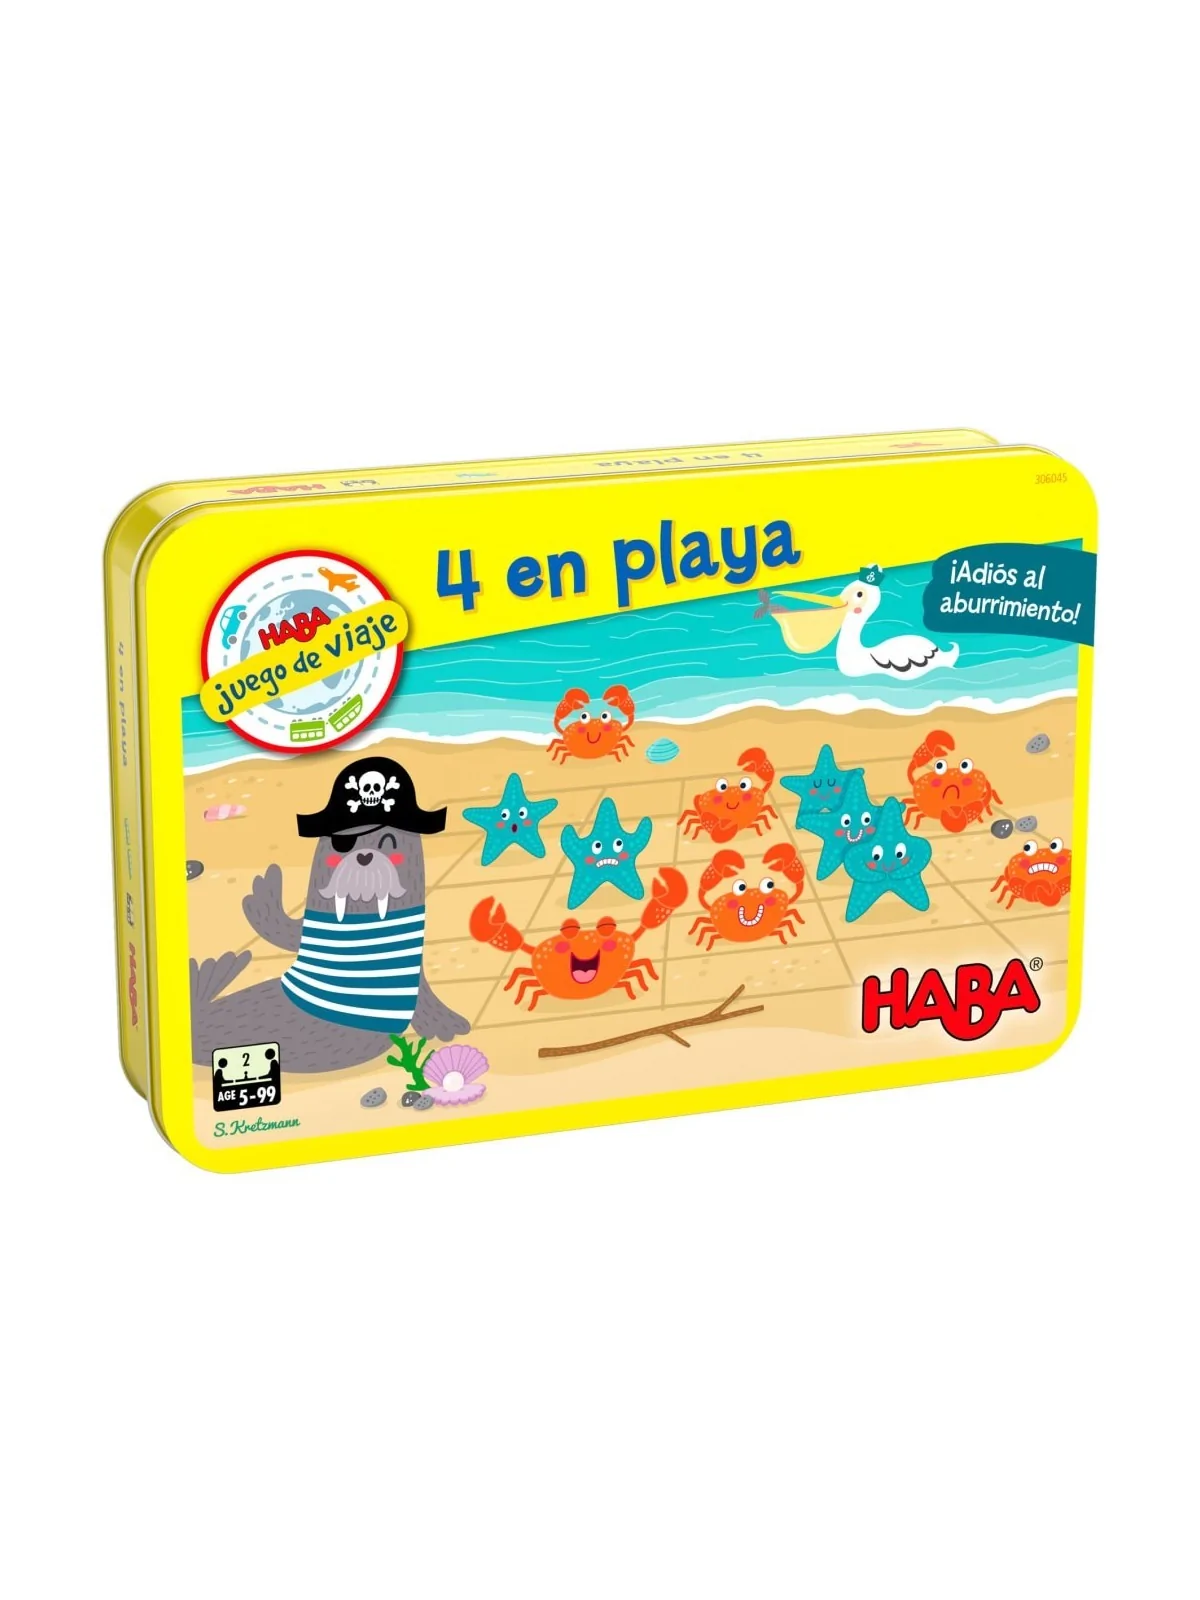 Comprar 4 en Playa barato al mejor precio 12,59 € de Haba